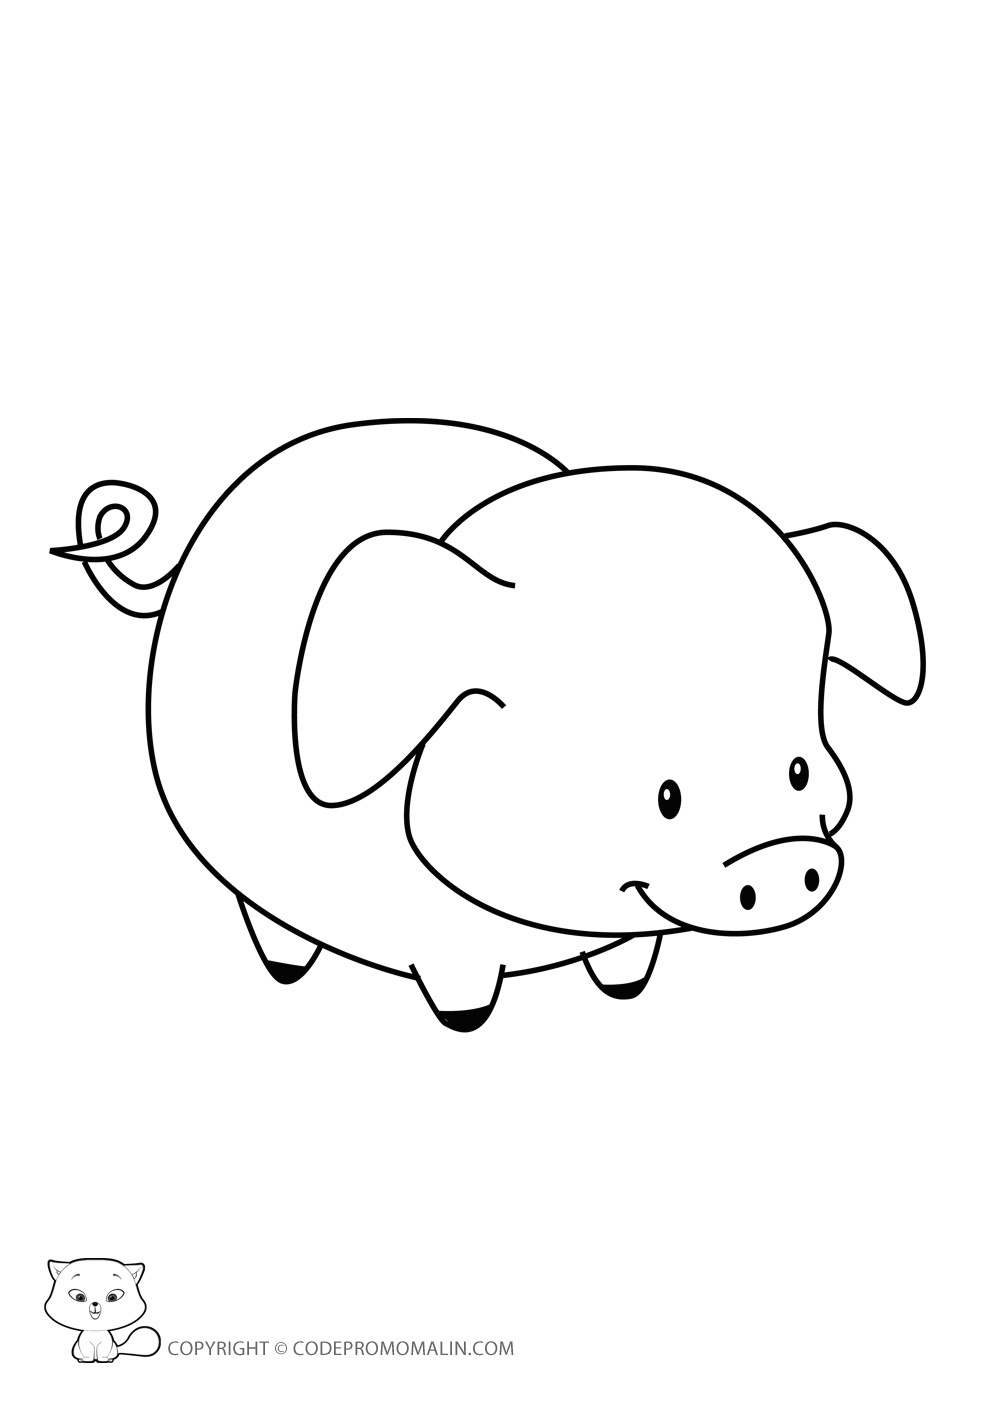 dessin imprimer gratuit cochon d inde